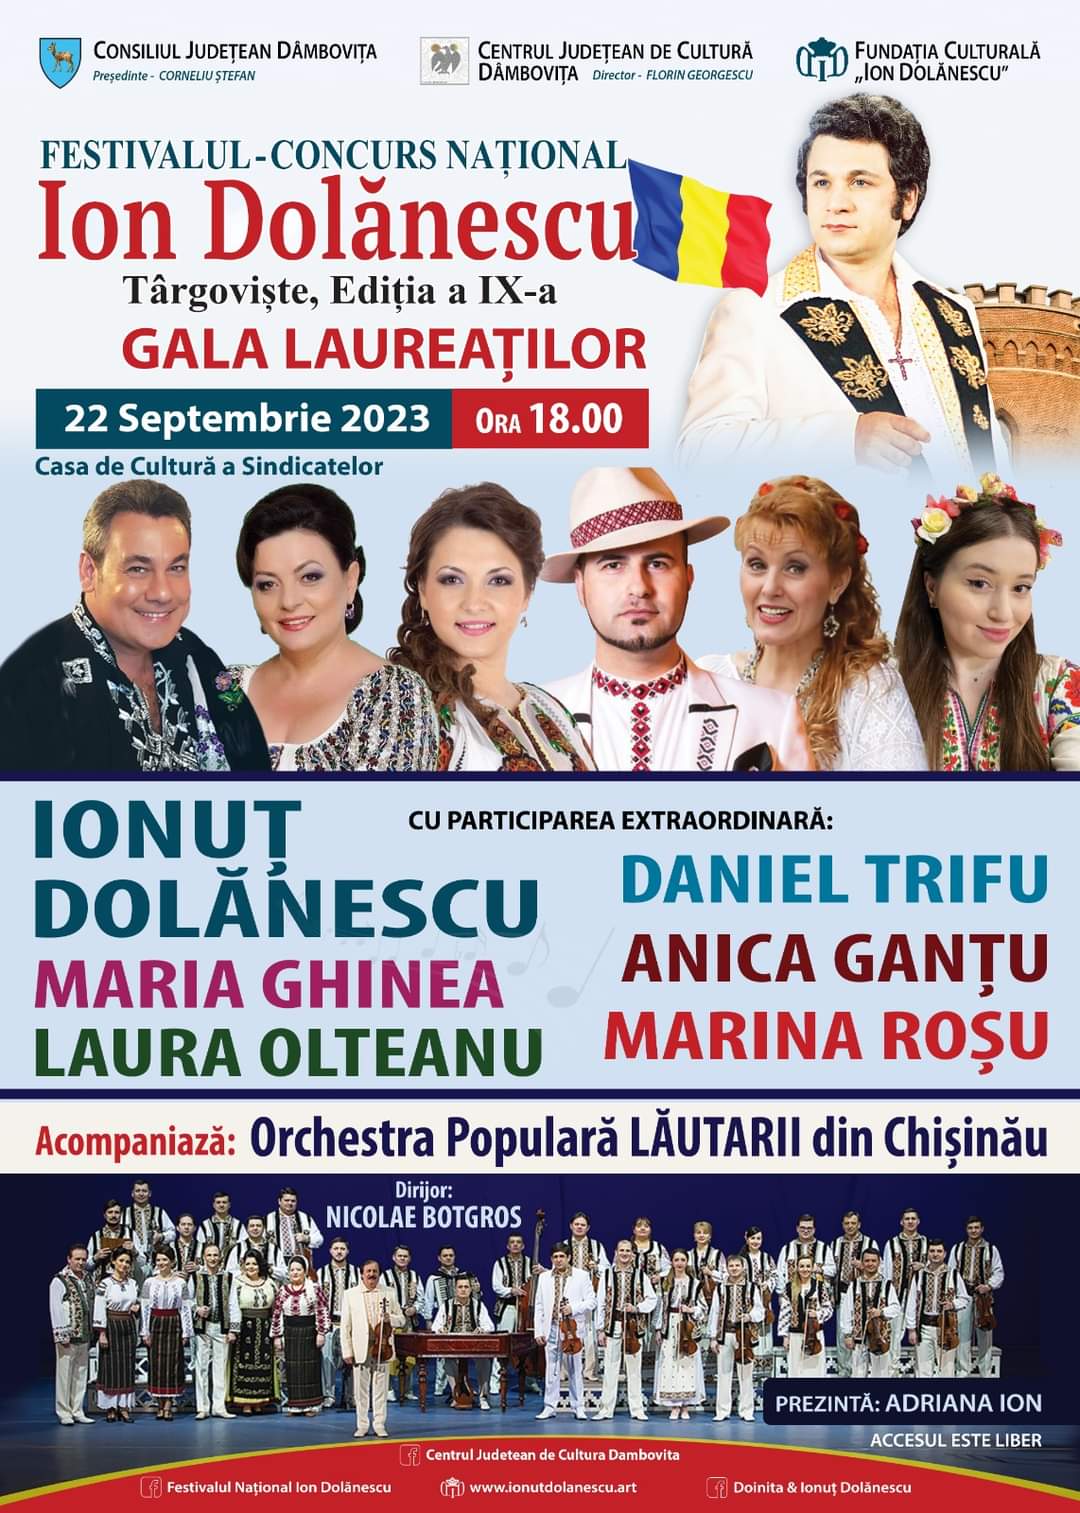 Consiliul Judeţean Dâmboviţa, prin Centrul Judeţean de Cultură Dâmboviţa, alături de Fundaţia Culturală Ion Dolănescu, vă invită în zilele 